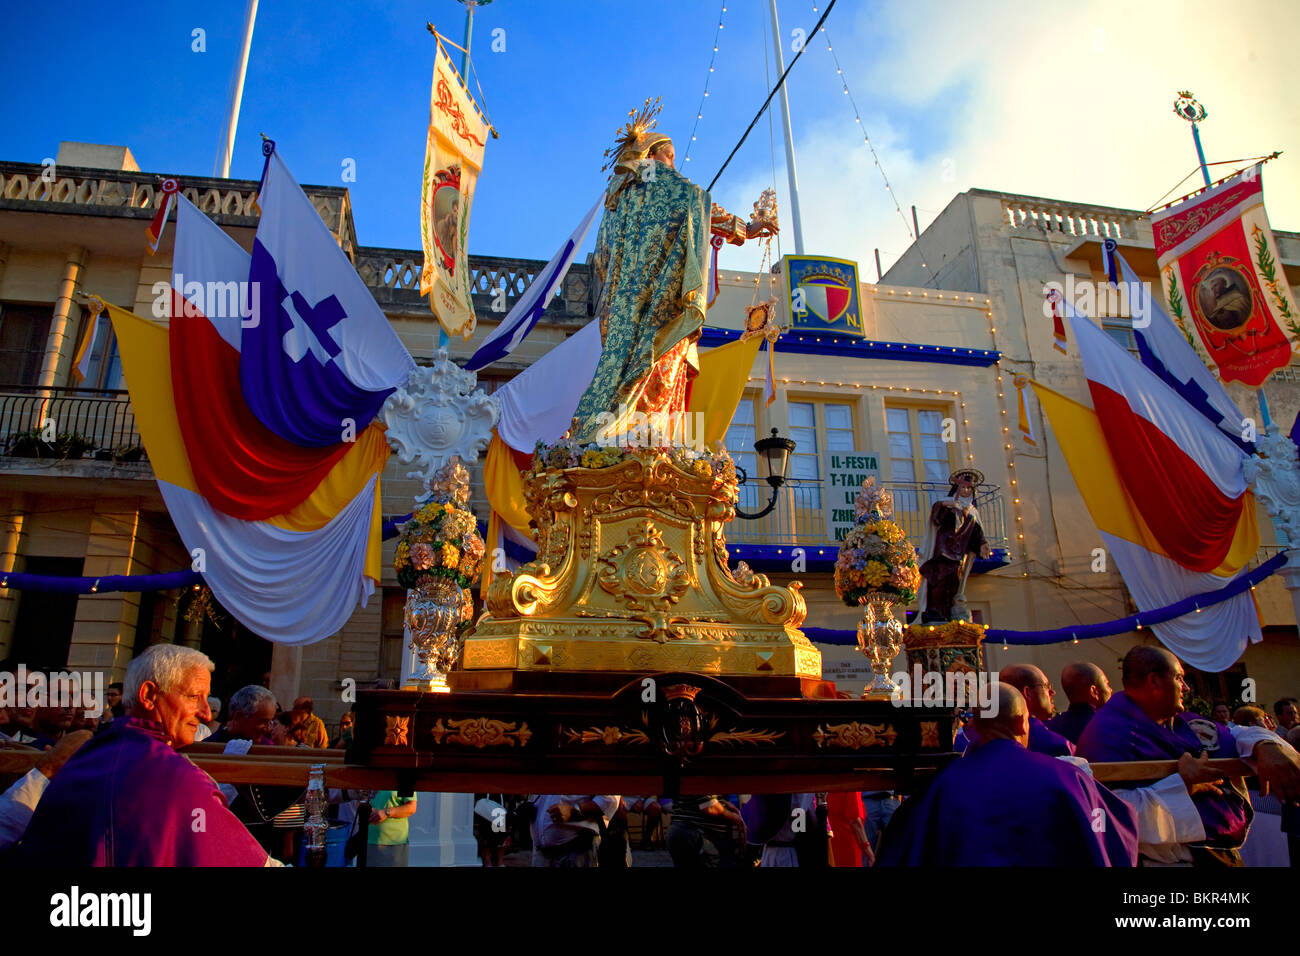 Malta, Zurrieq; la statua del santo patrono, la Madonna viene portata durante il religioso annuale parata. Foto Stock